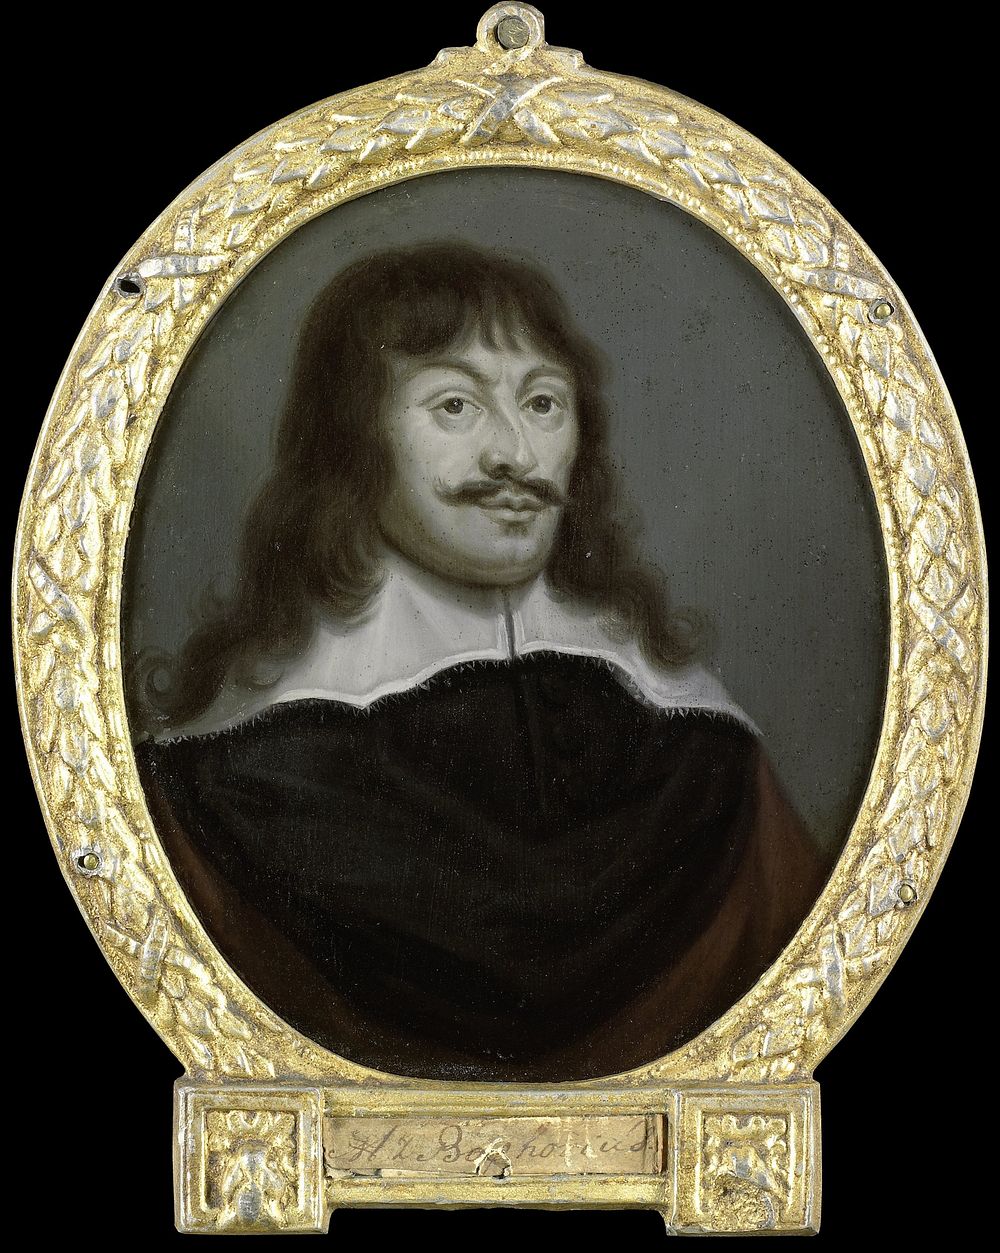 Portrait of Marcus Zuërius van Boxhorn, Historian and Professor at Leiden (1700 - 1732) by Arnoud van Halen and Jonas…